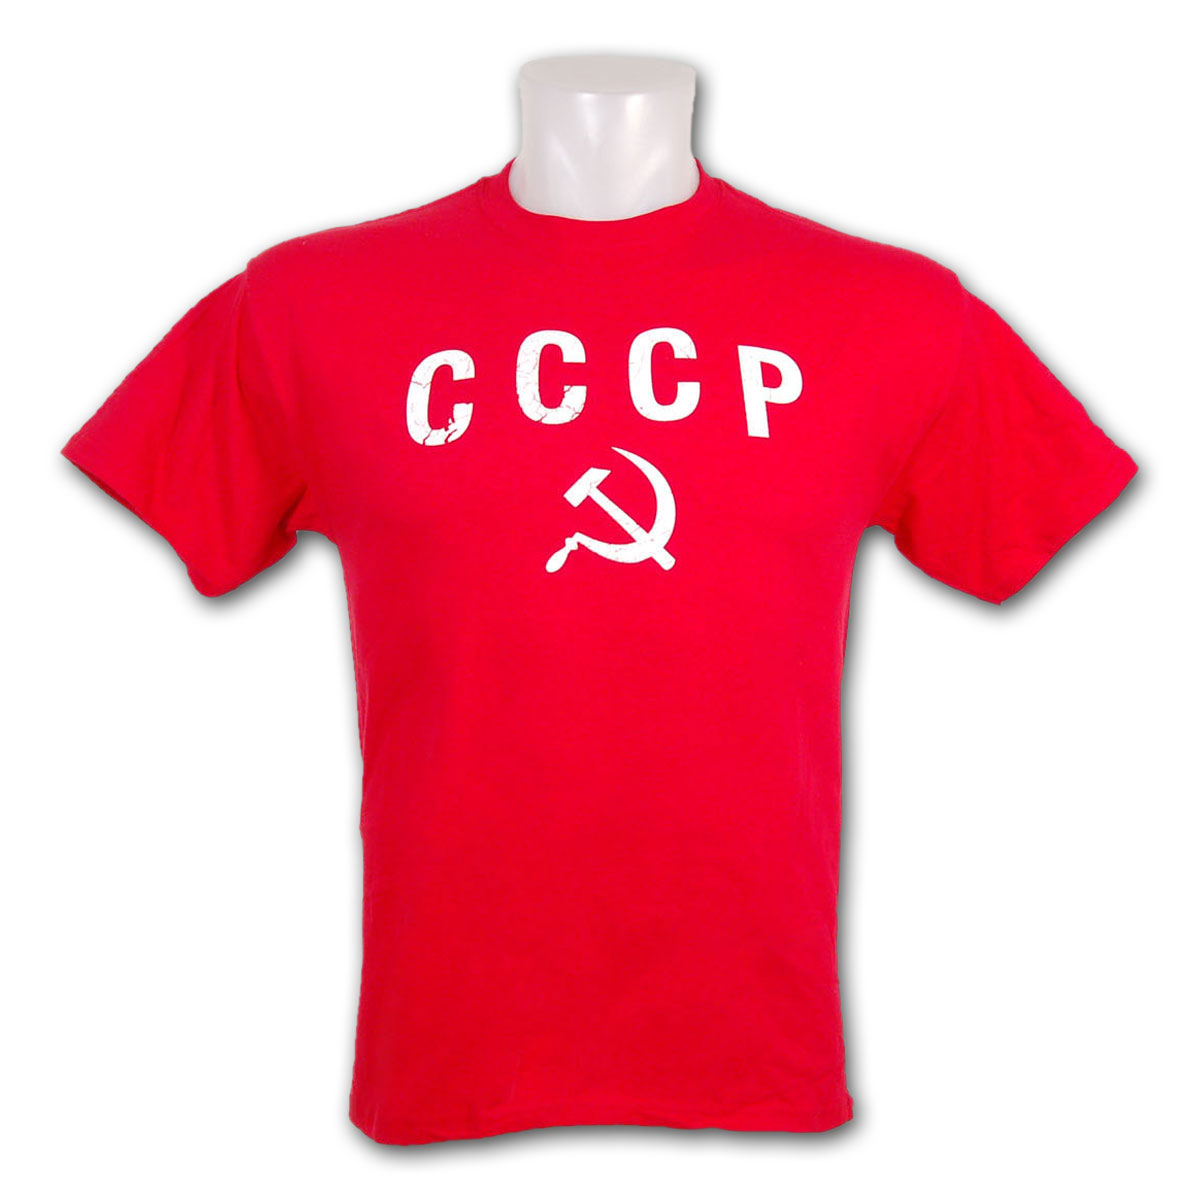 Cccp Logo Soviet Red Army Vladislav